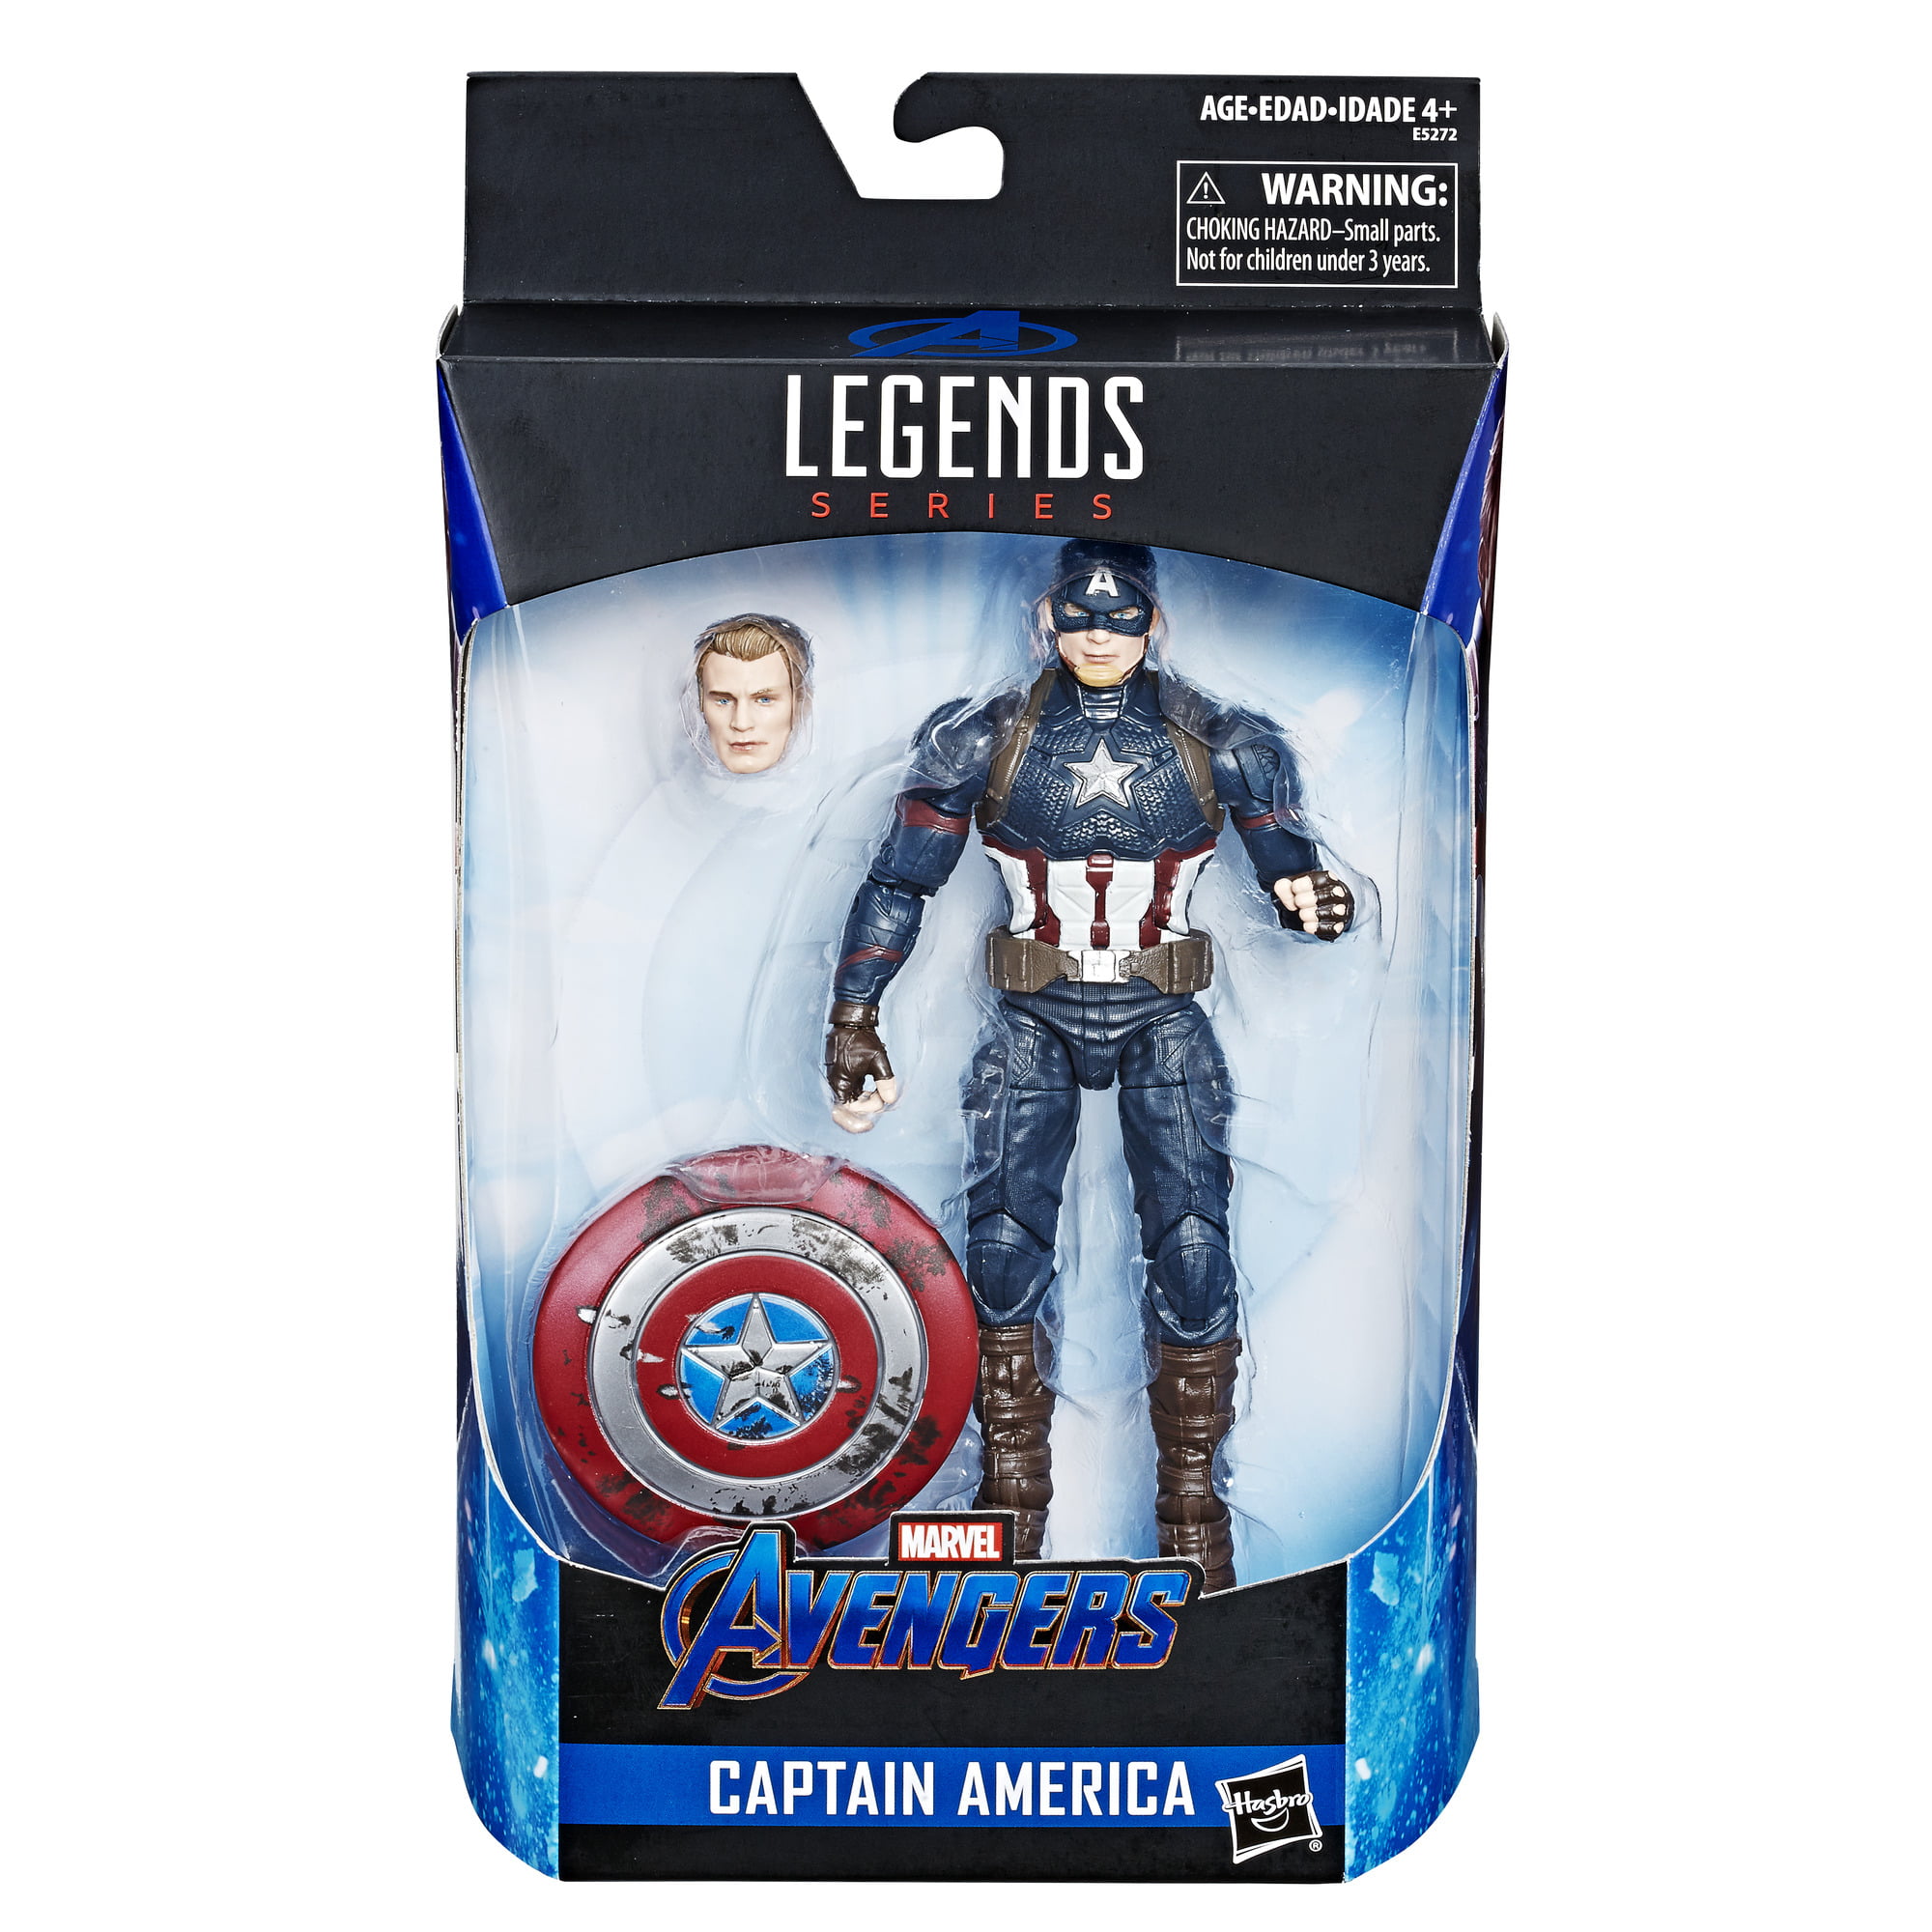 Hasbro Marvel Legends Series Avengers Endgame Captain America Action Figure for sale online